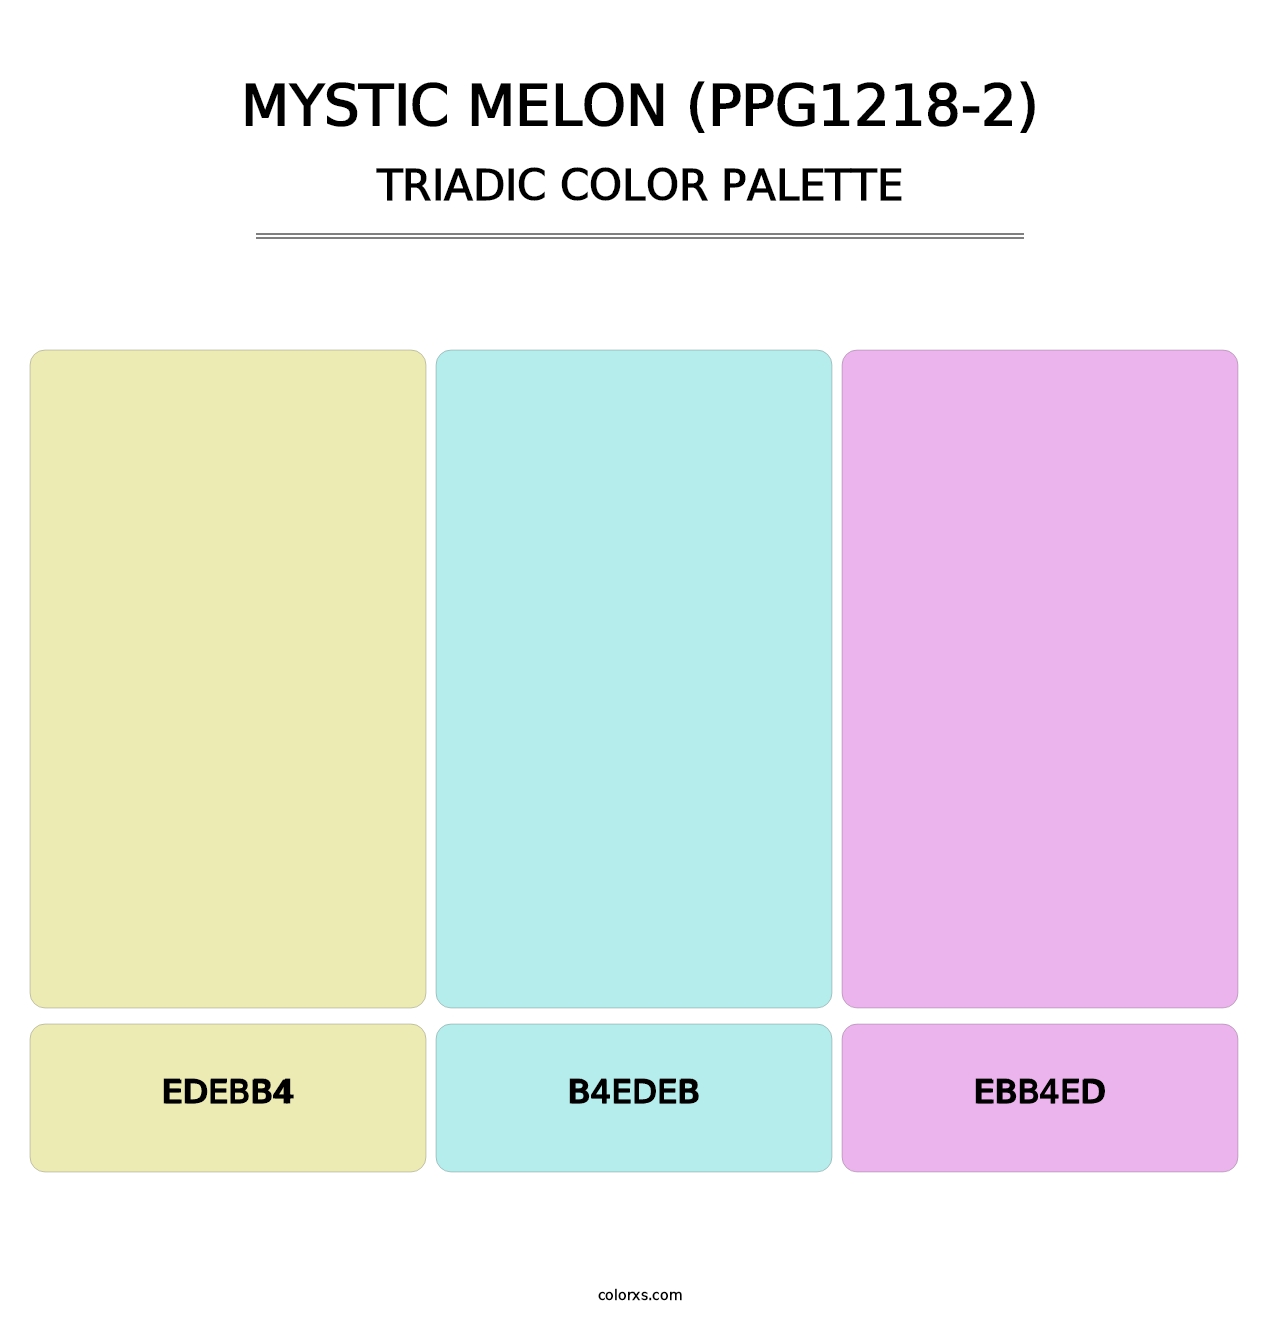 Mystic Melon (PPG1218-2) - Triadic Color Palette